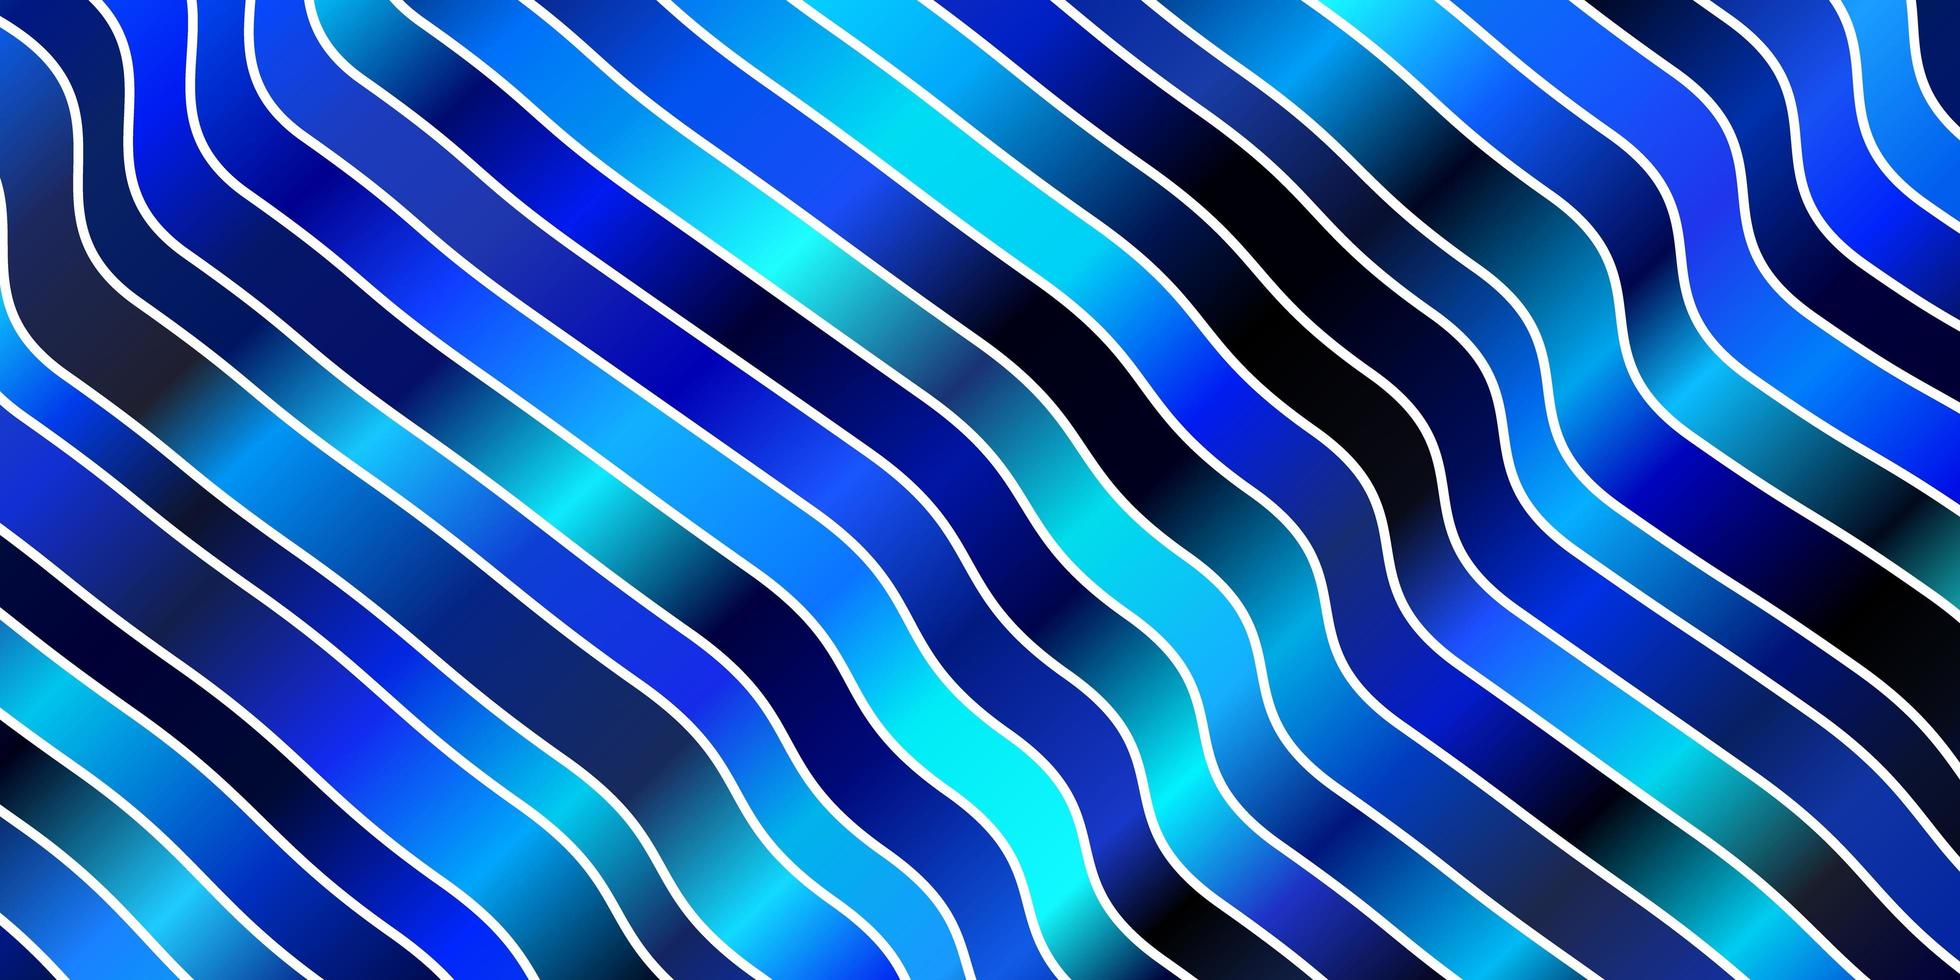 texture de vecteur bleu foncé avec des lignes ironiques.